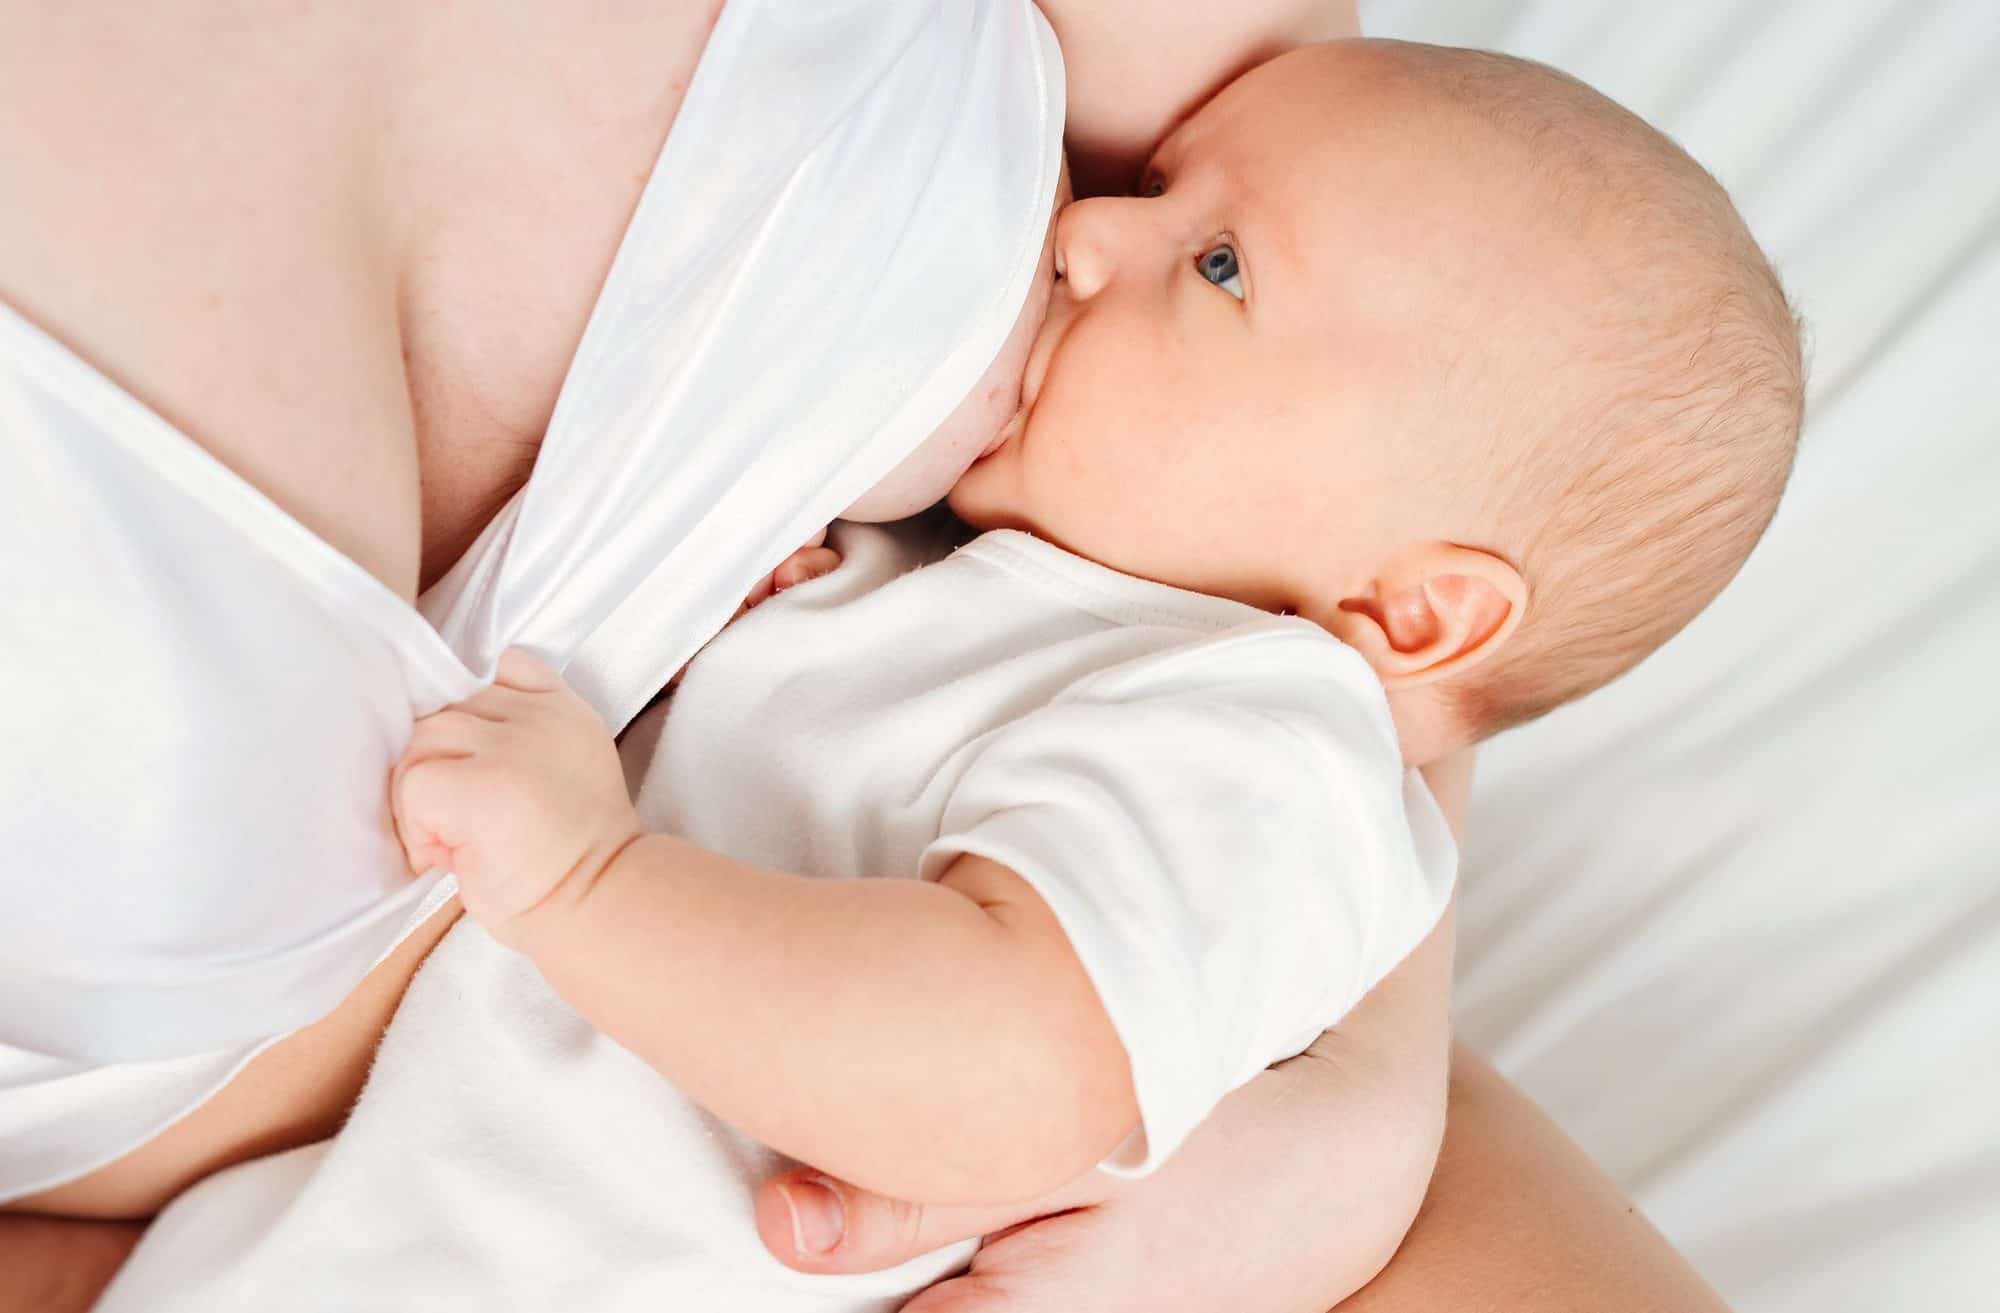 Qué factores inmunológicos tiene la leche materna? - CSC